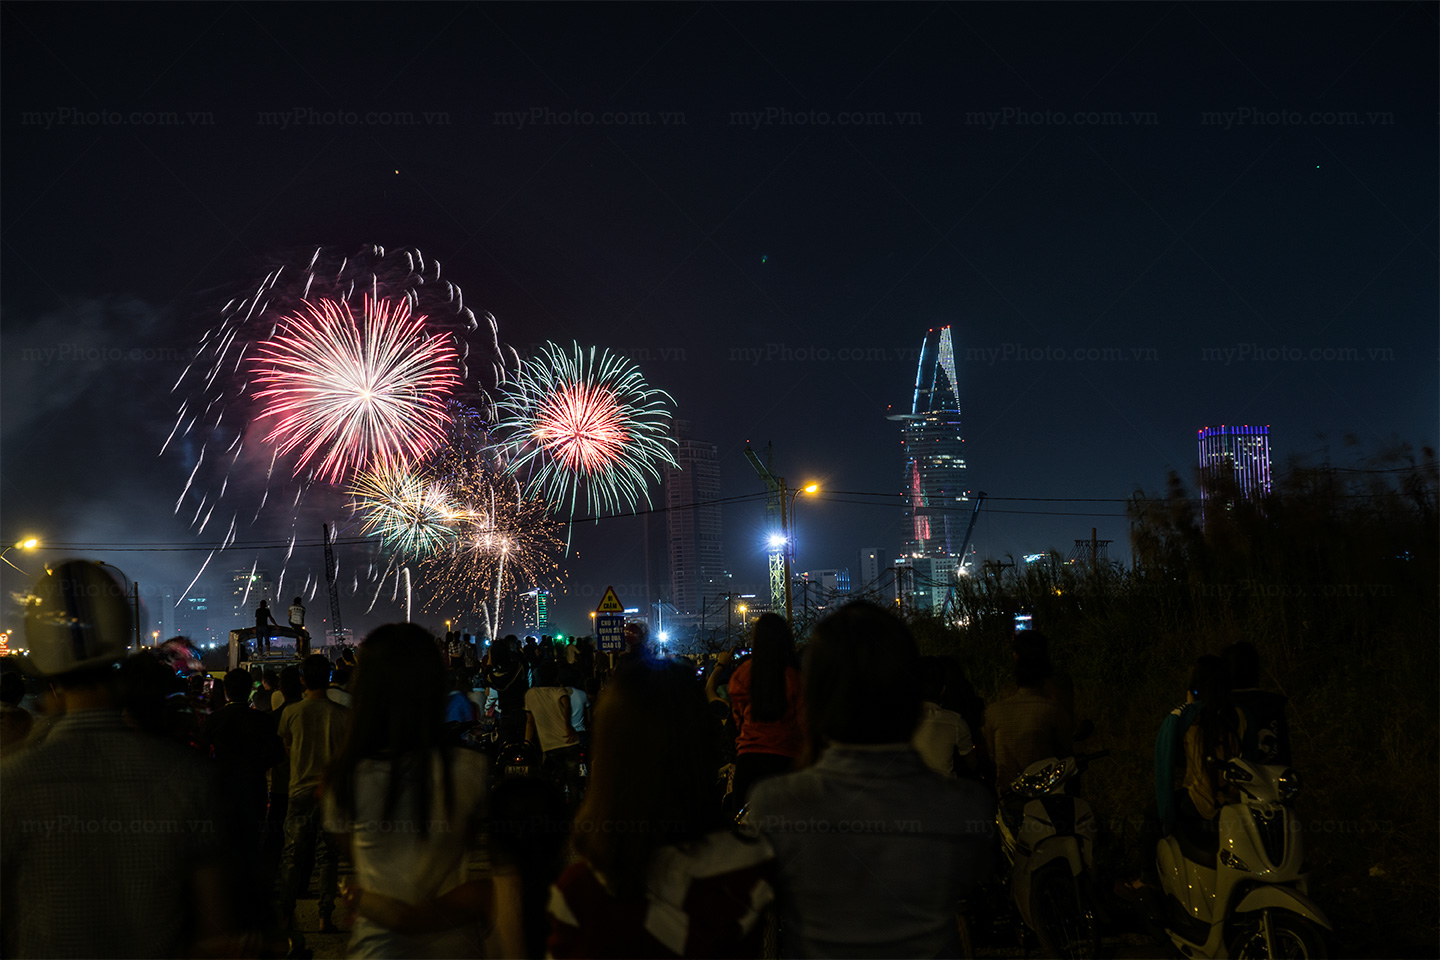 pháo hoa đêm Sài Gòn chào đón năm mới 2016